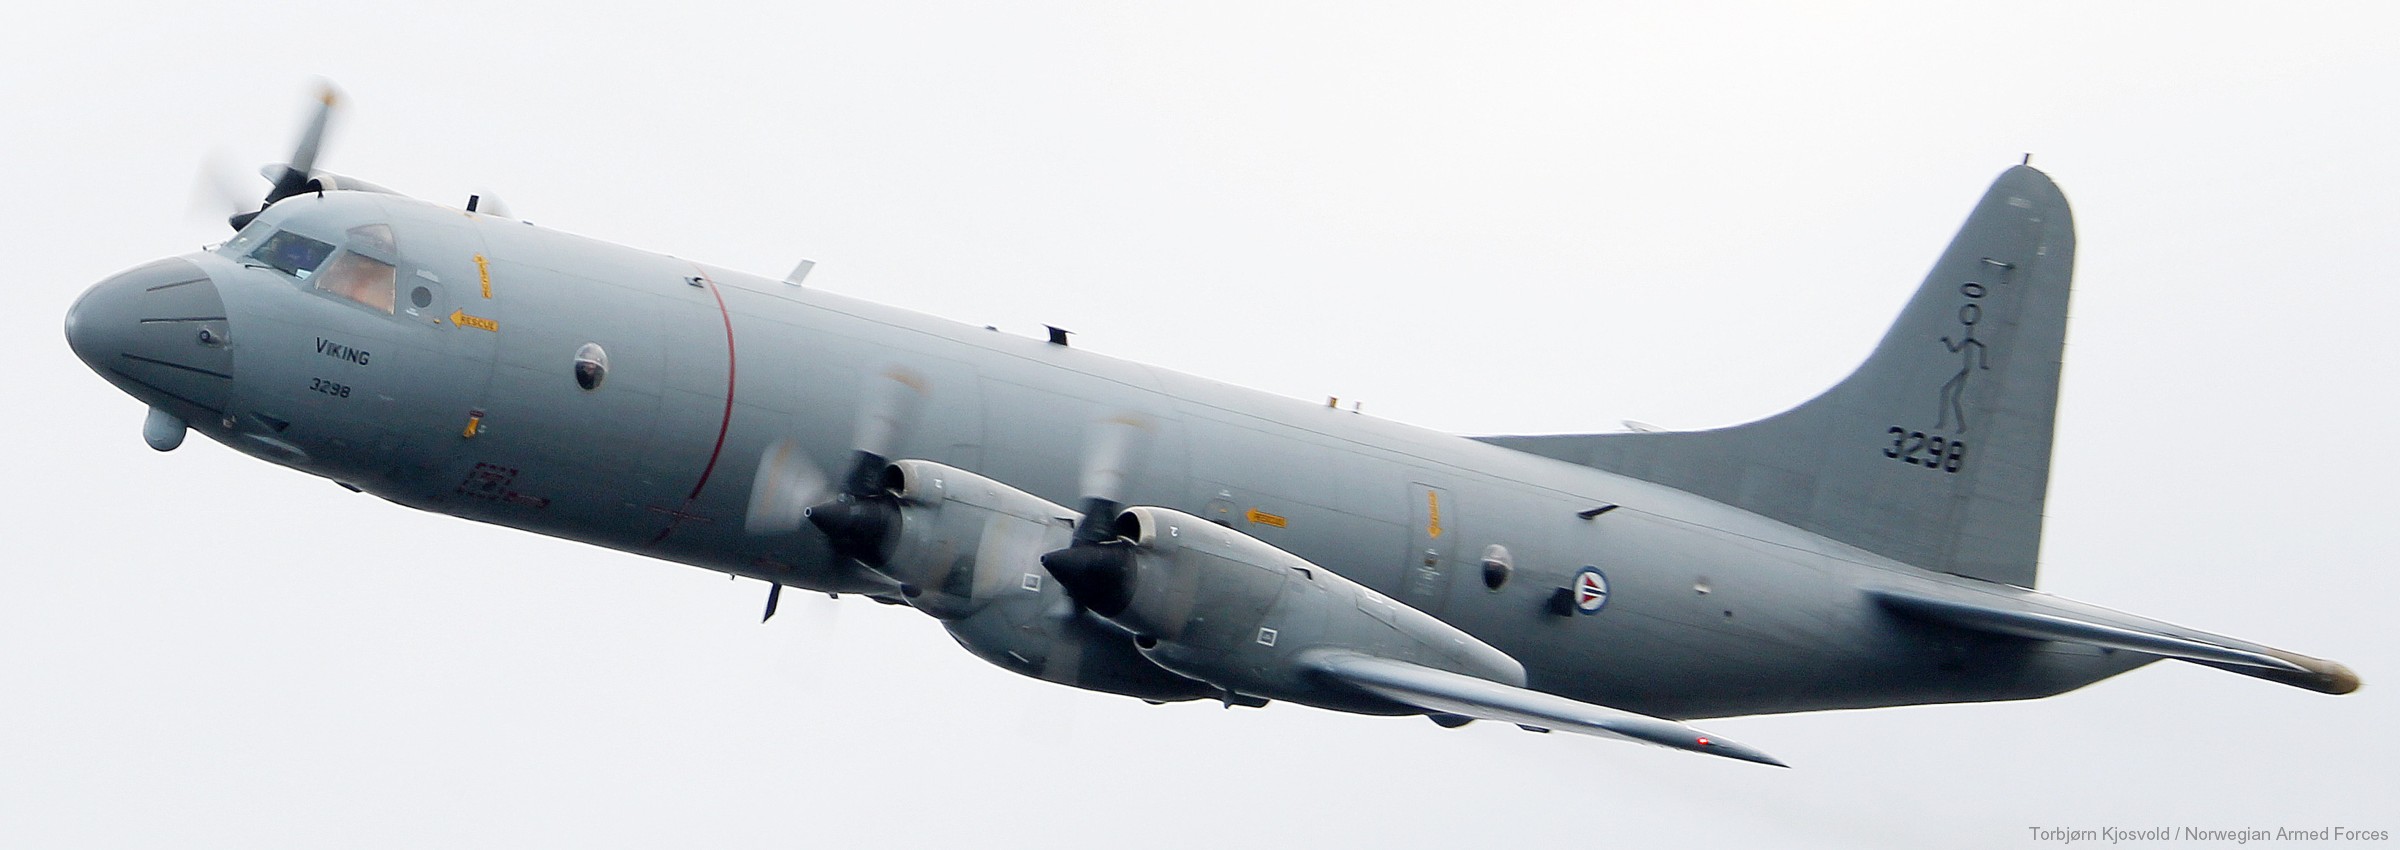 Η Νορβηγία αποσύρει τα αεροσκάφη ναυτικής συνεργασίας τύπου P-3C – Πουλήθηκαν στην Αργεντινή